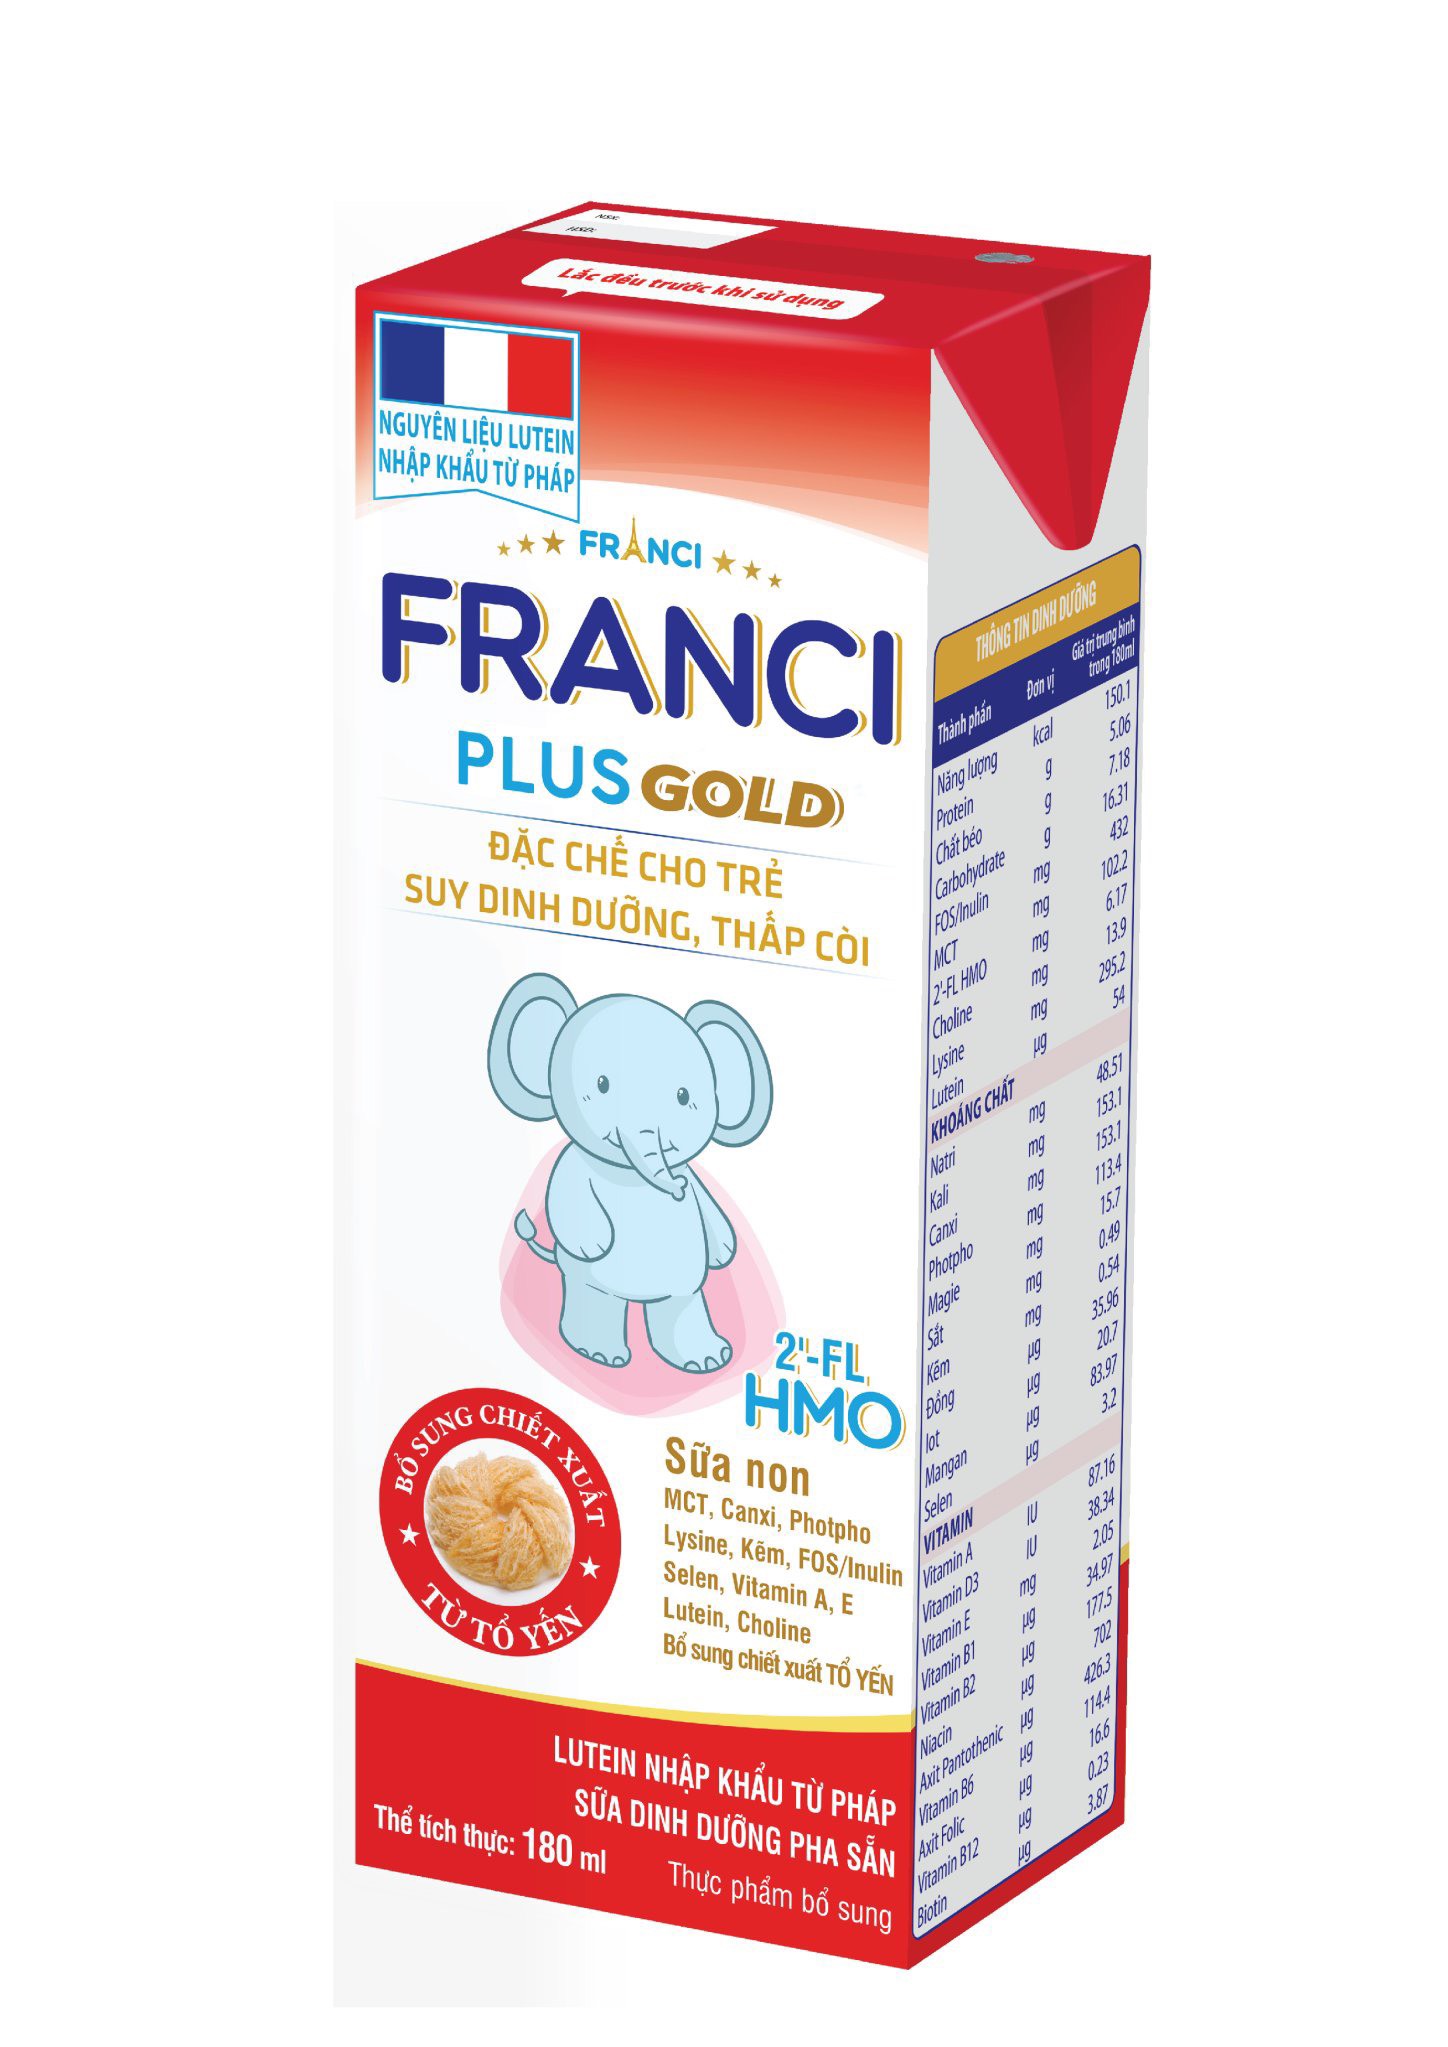 Sữa bột pha sẵn FRANCI PLUS GOLD - Đặc chế cho trẻ suy dinh dưỡng